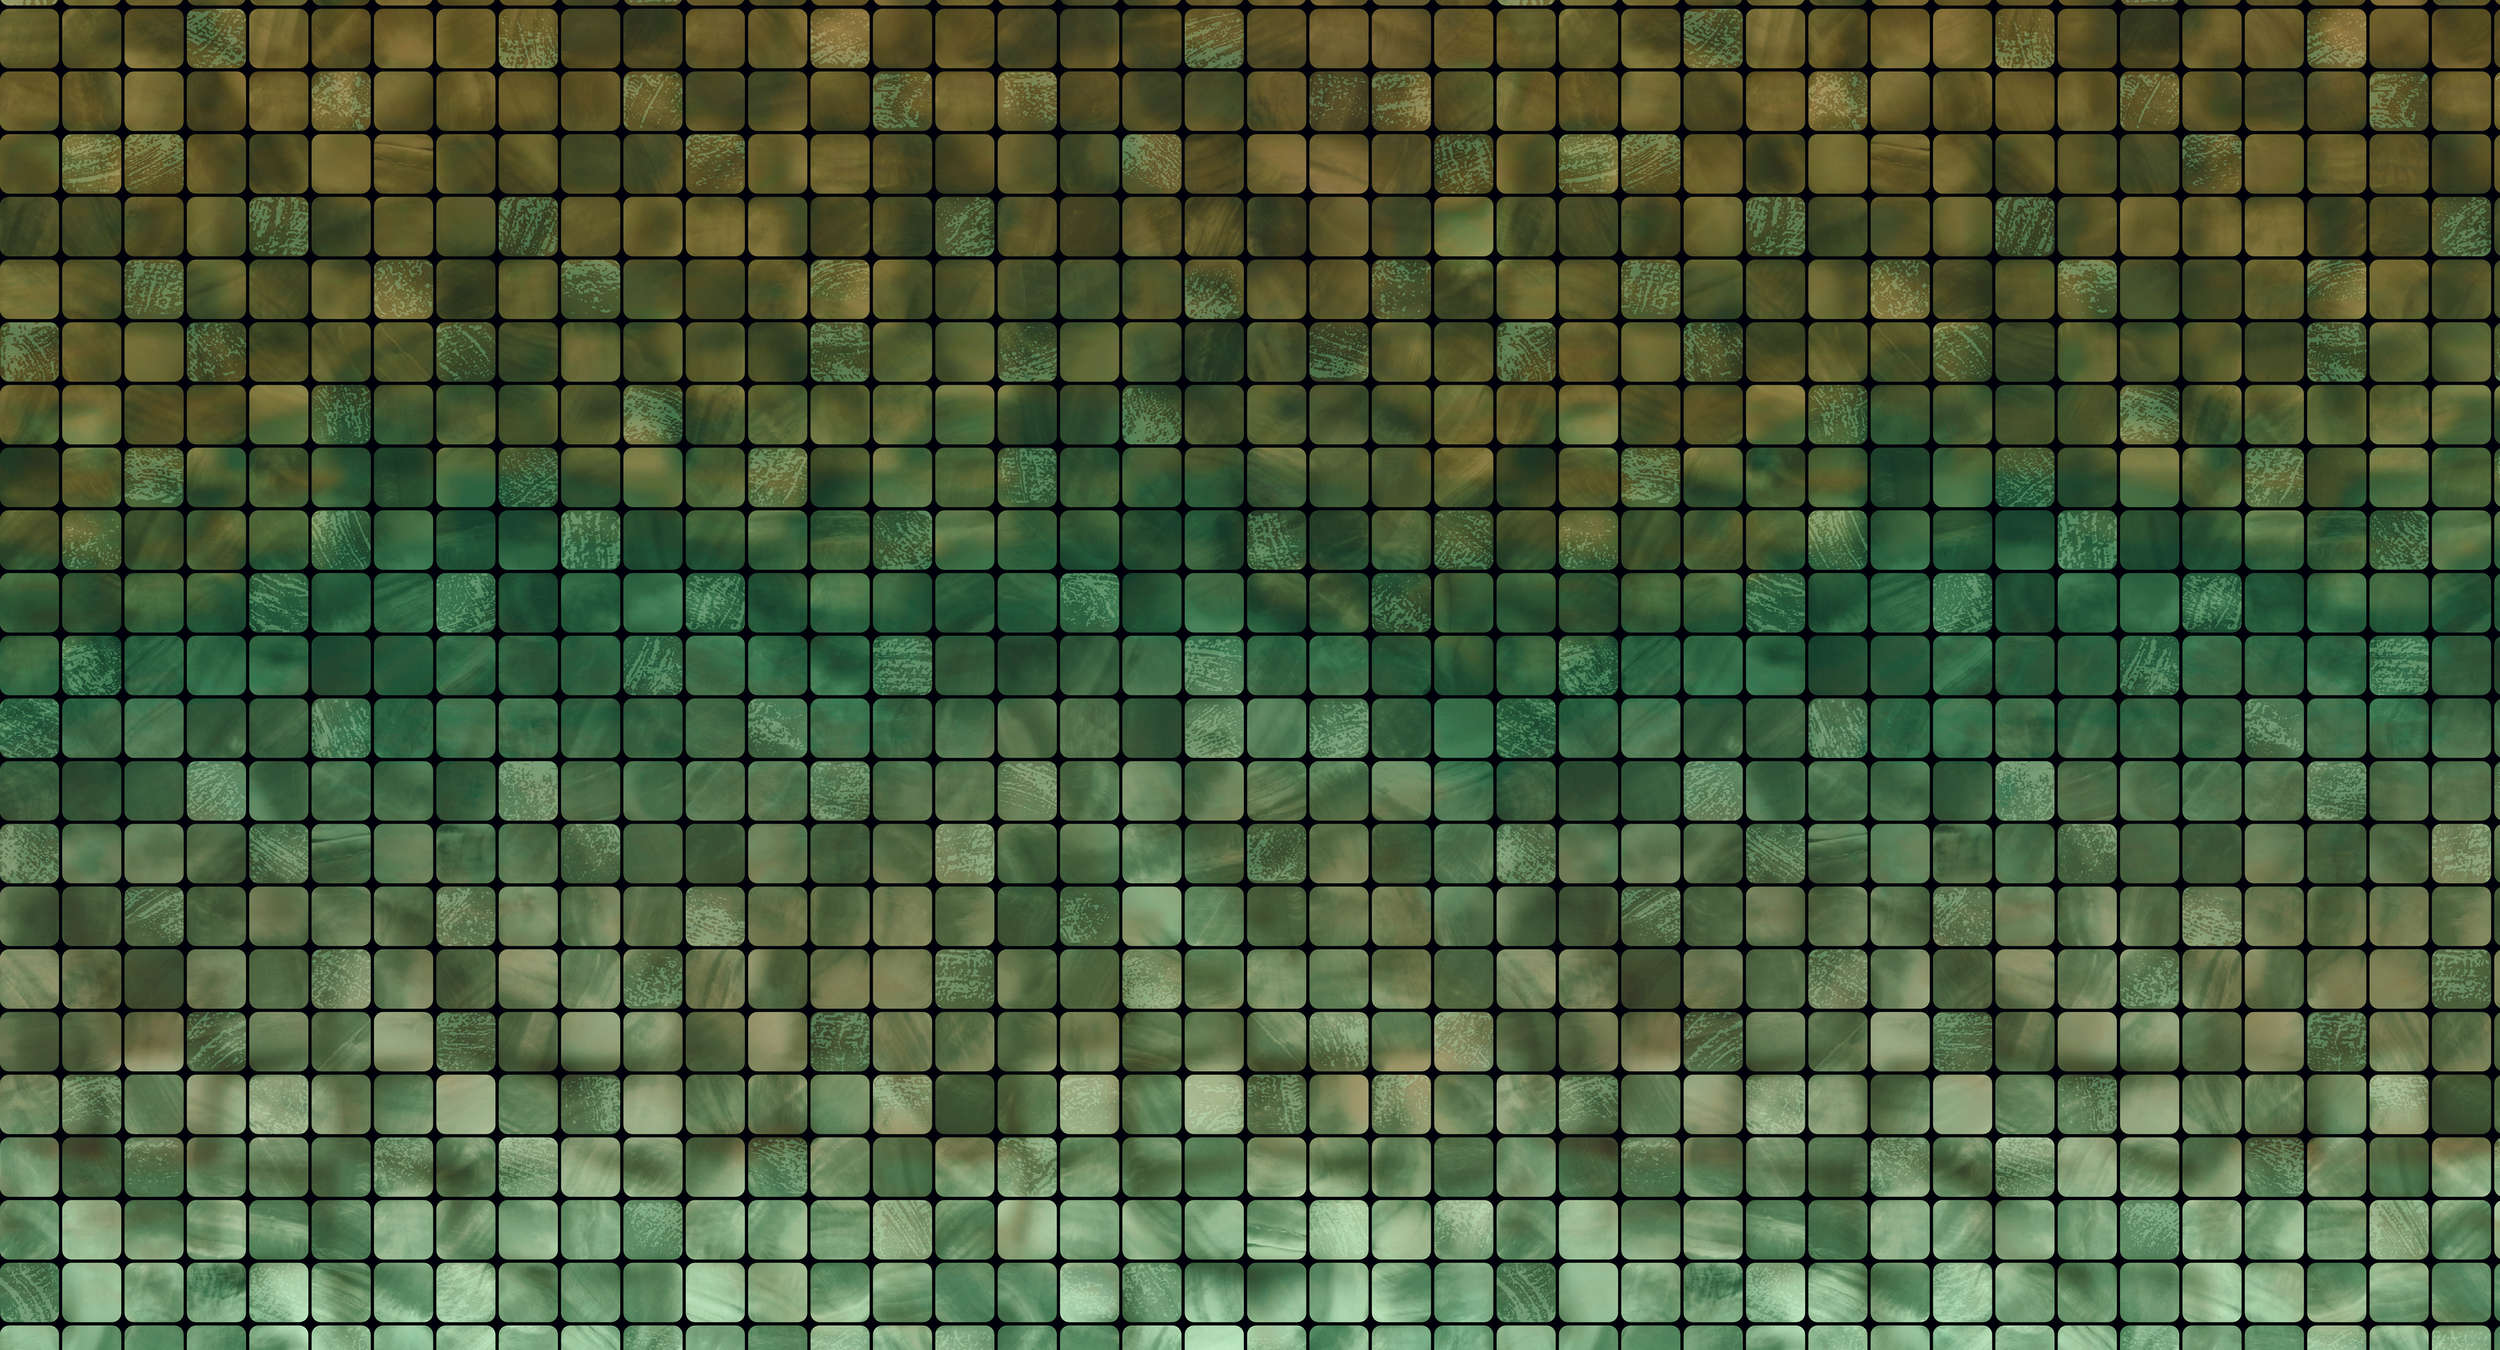             Papel pintado de mosaico moderno y con diseño de azulejos - Verde, Crema
        